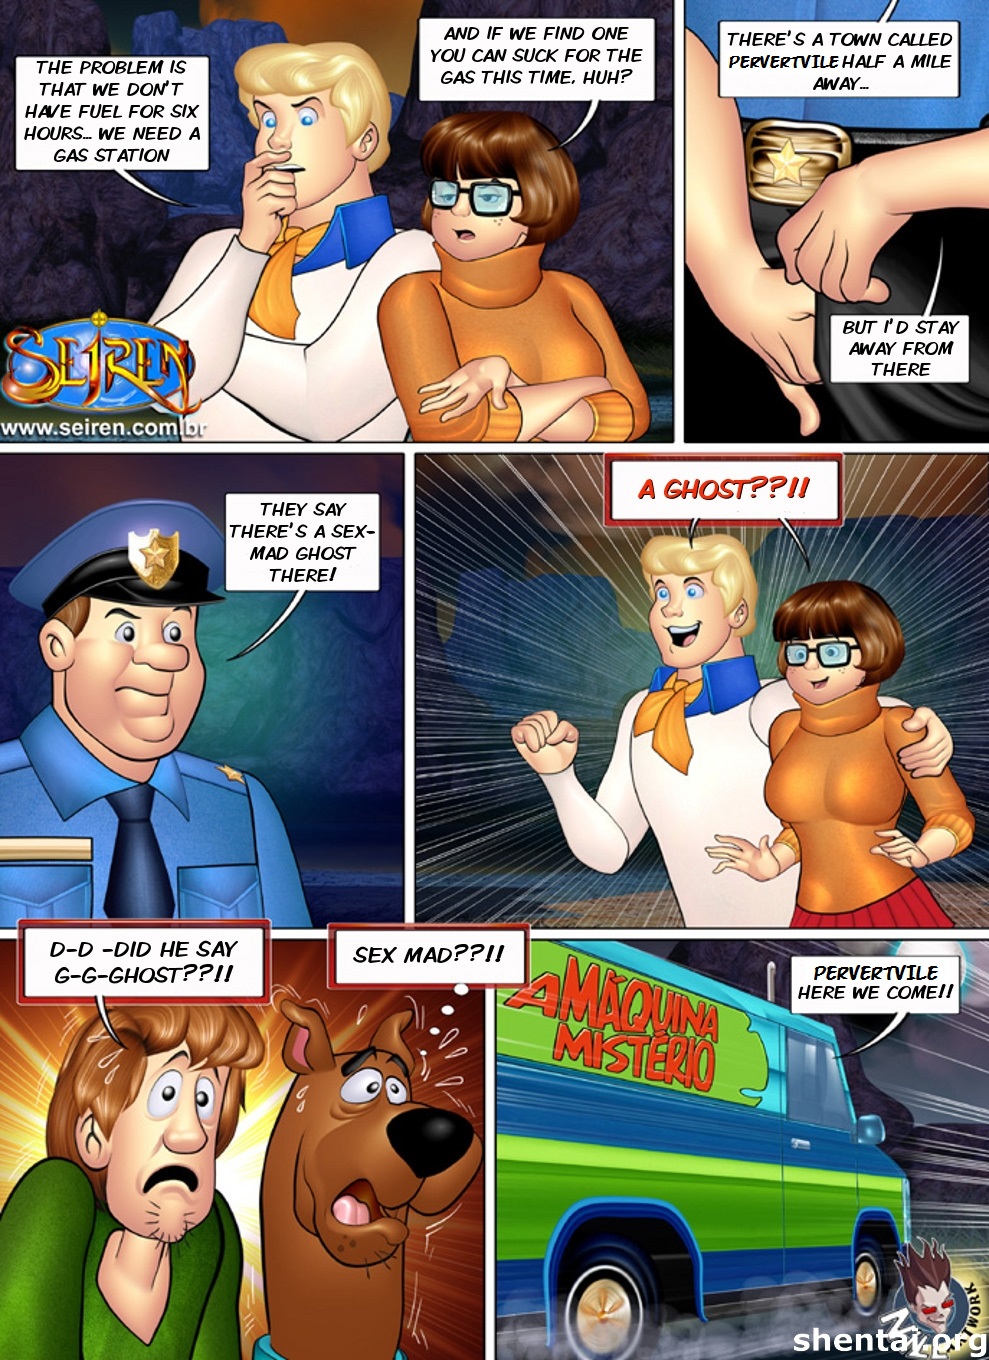 Seiren – Skooby-Boo (Scooby-Doo)